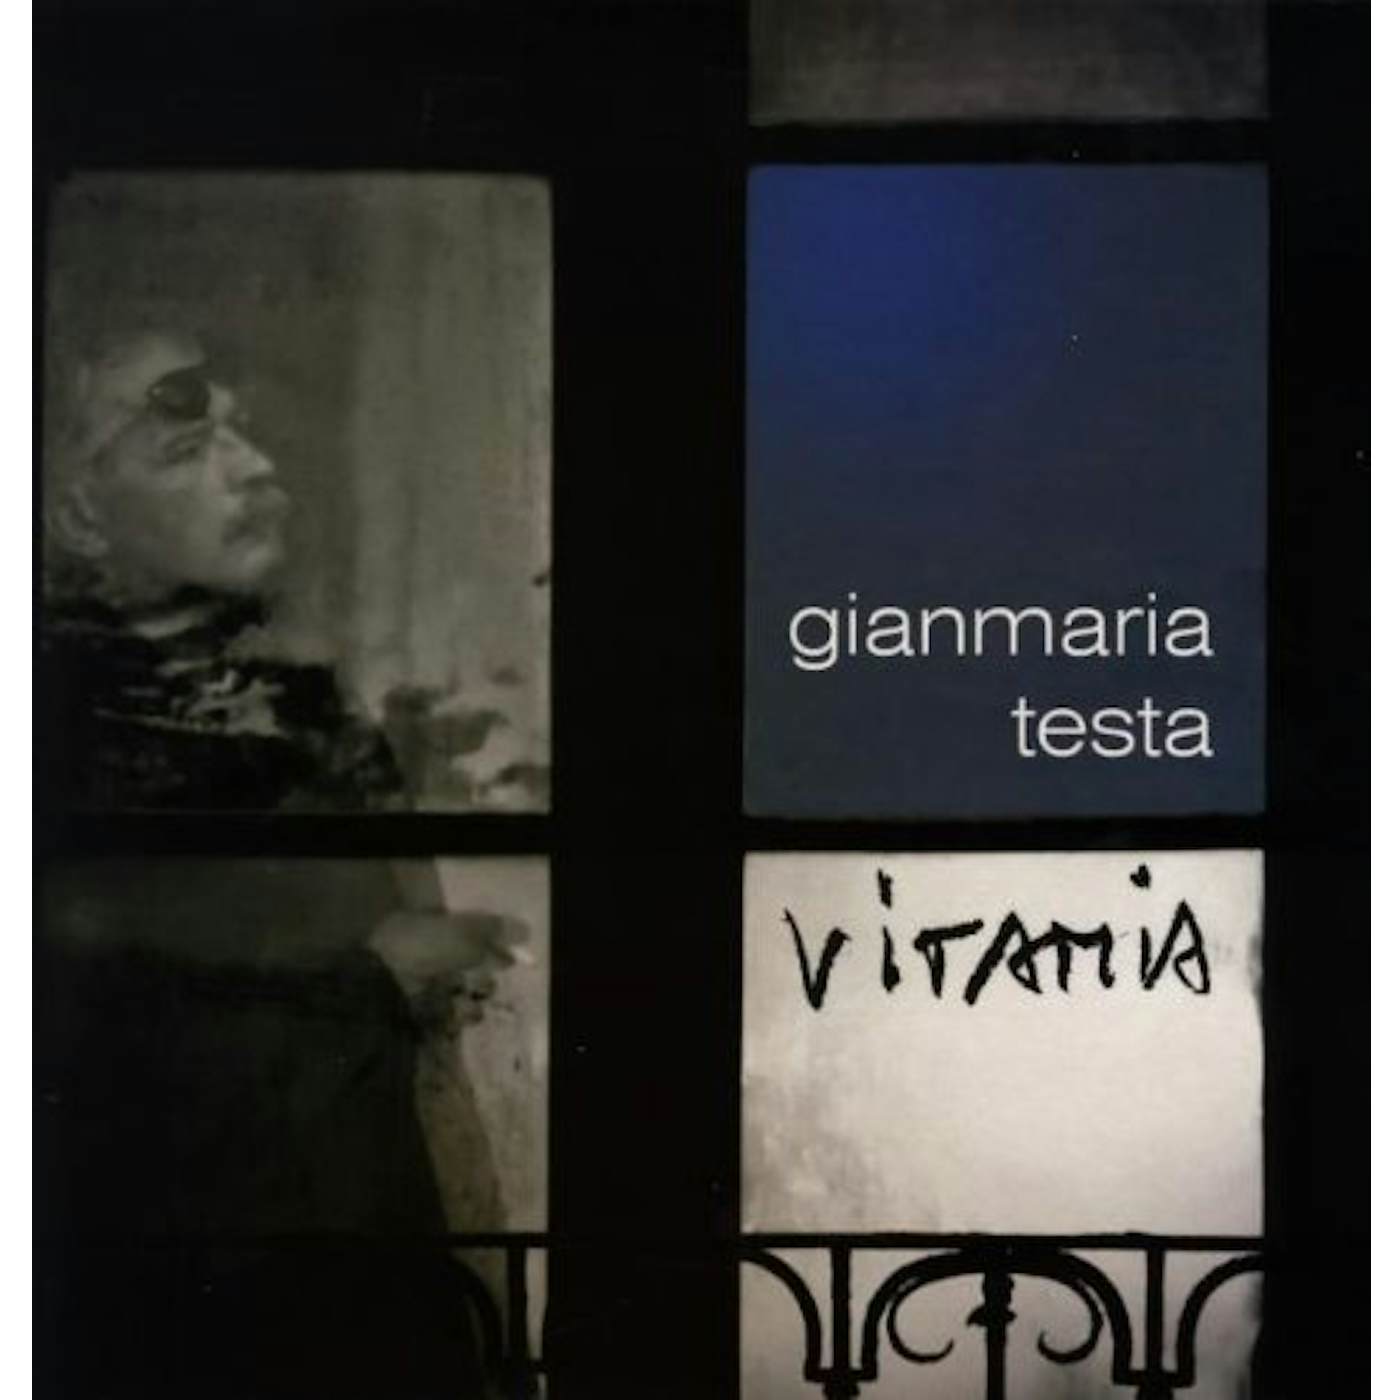 Gianmaria Testa Vitamia Vinyl Record